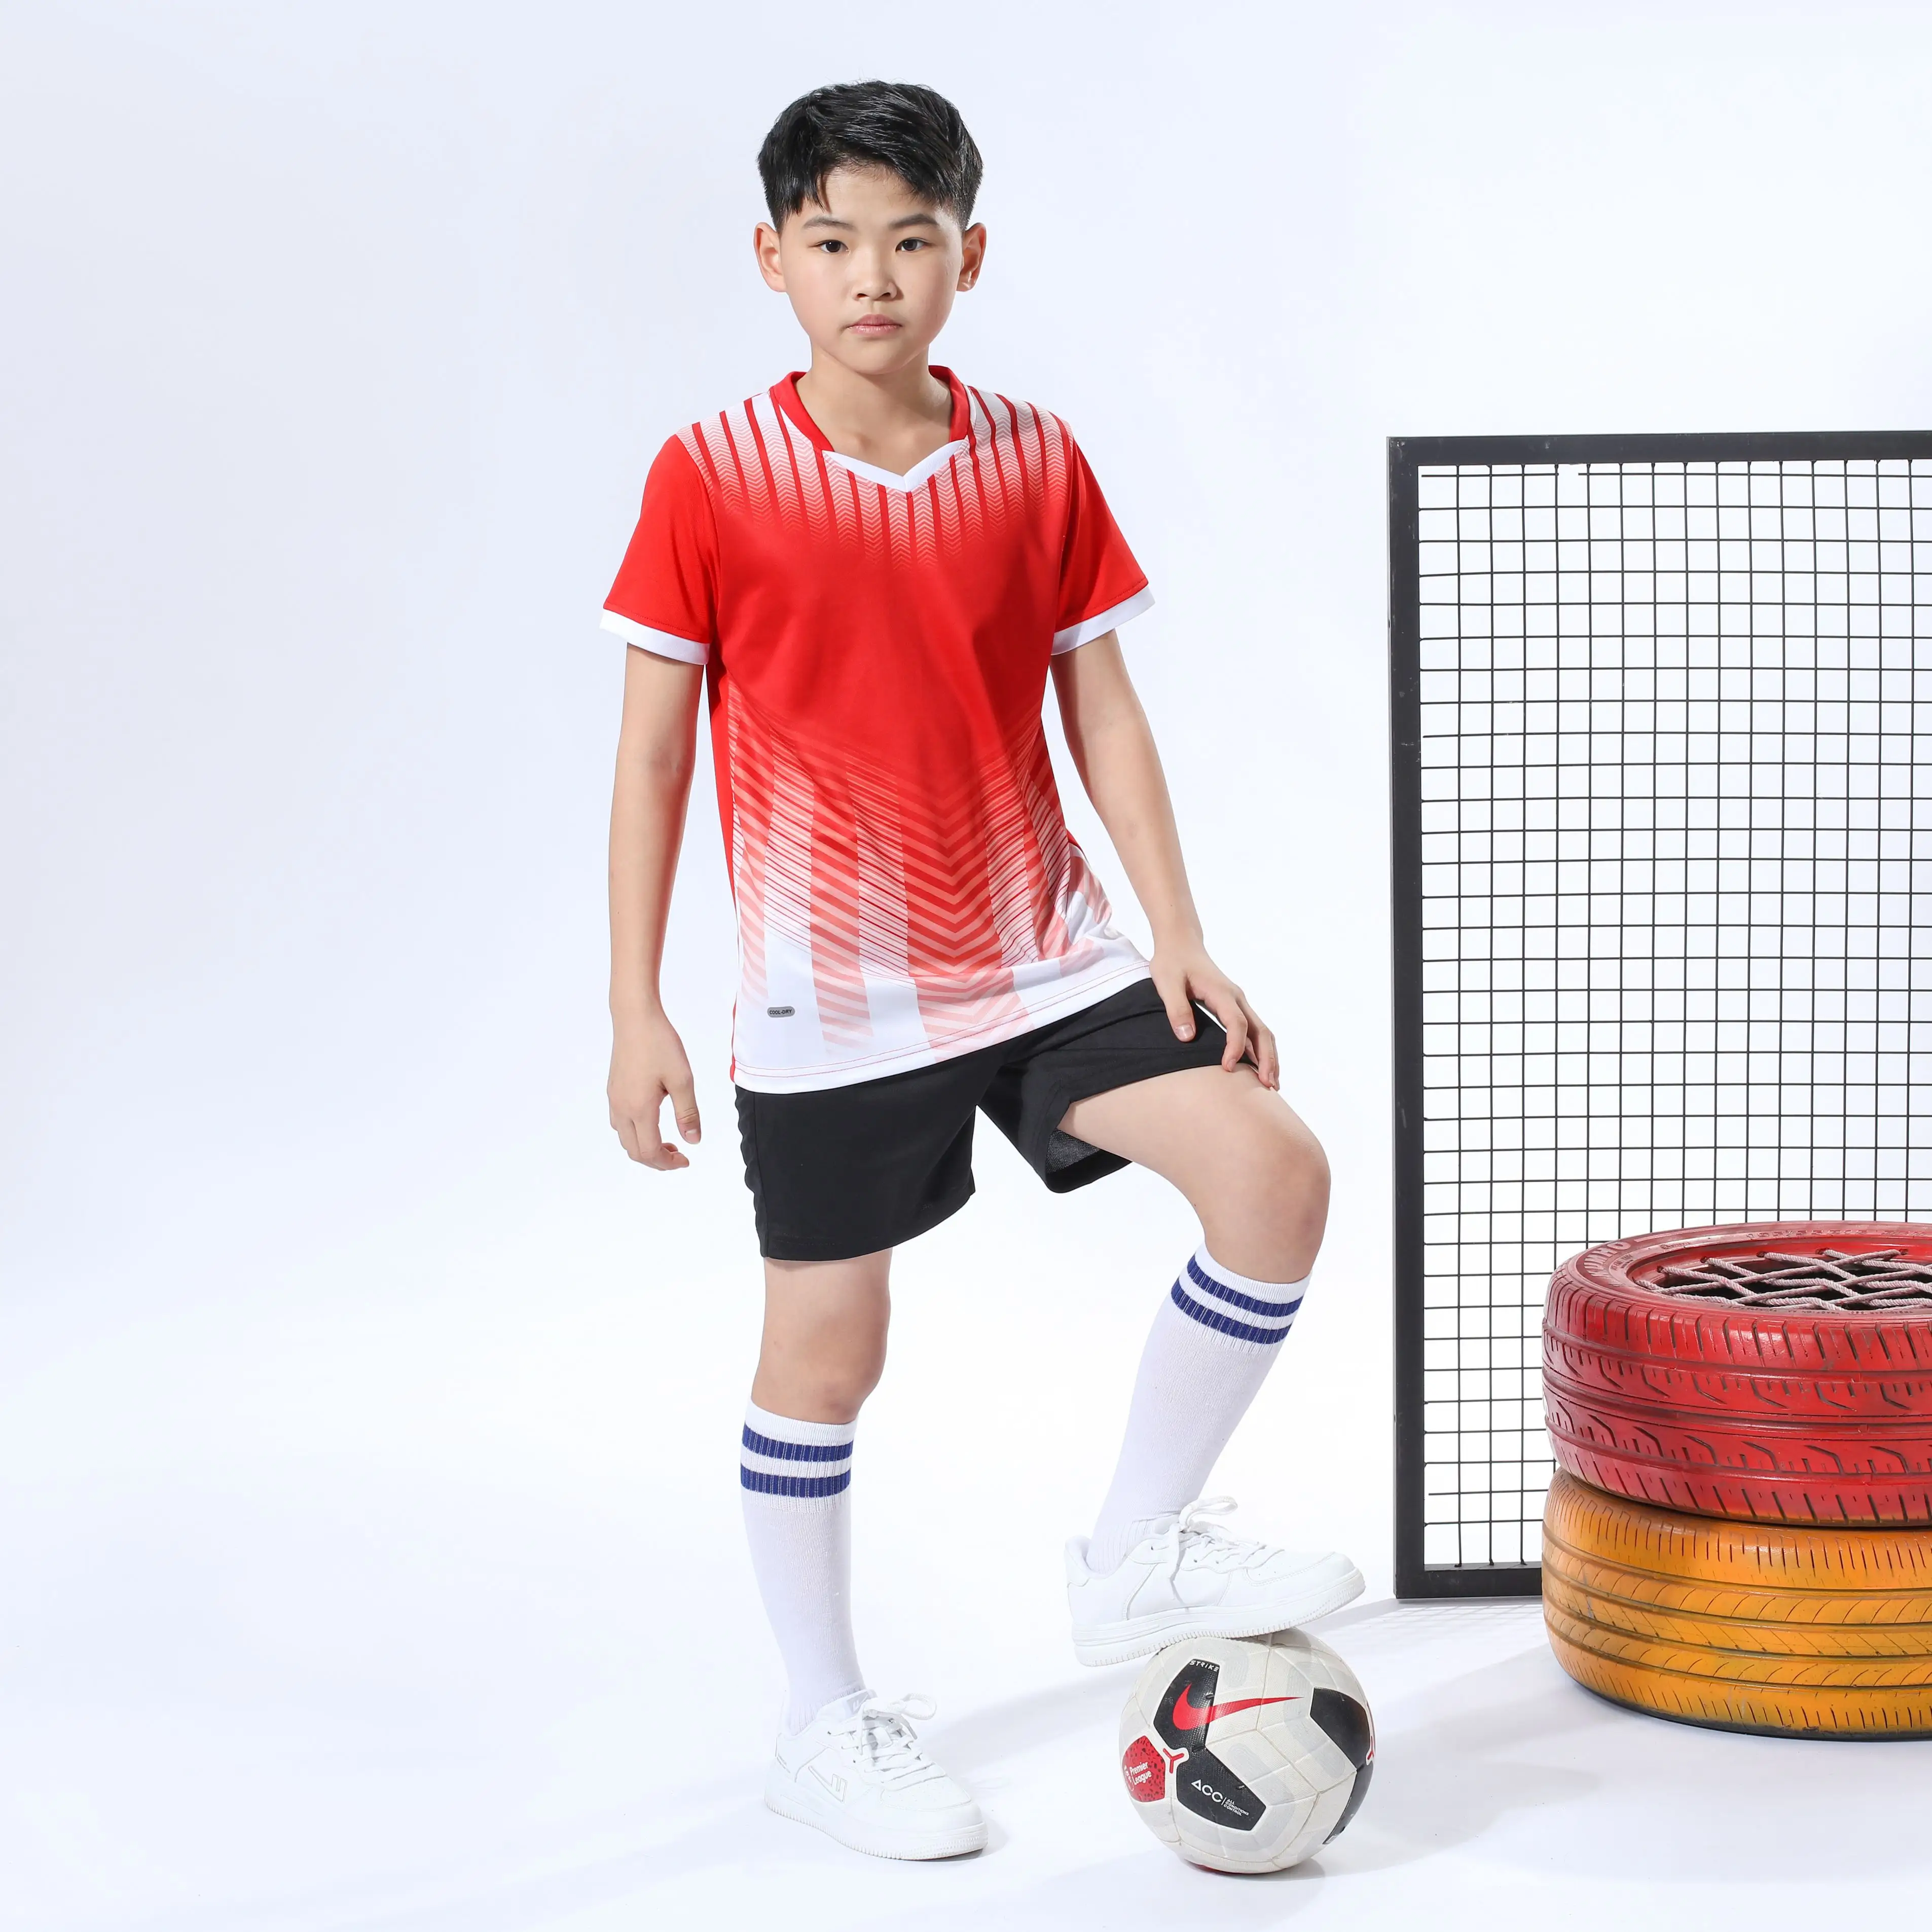 스포츠웨어 베스트 셀러 맞춤형 디자인 남자 축구 유니폼/공장 가격 맞춤형 로고 남자 축구 유니폼